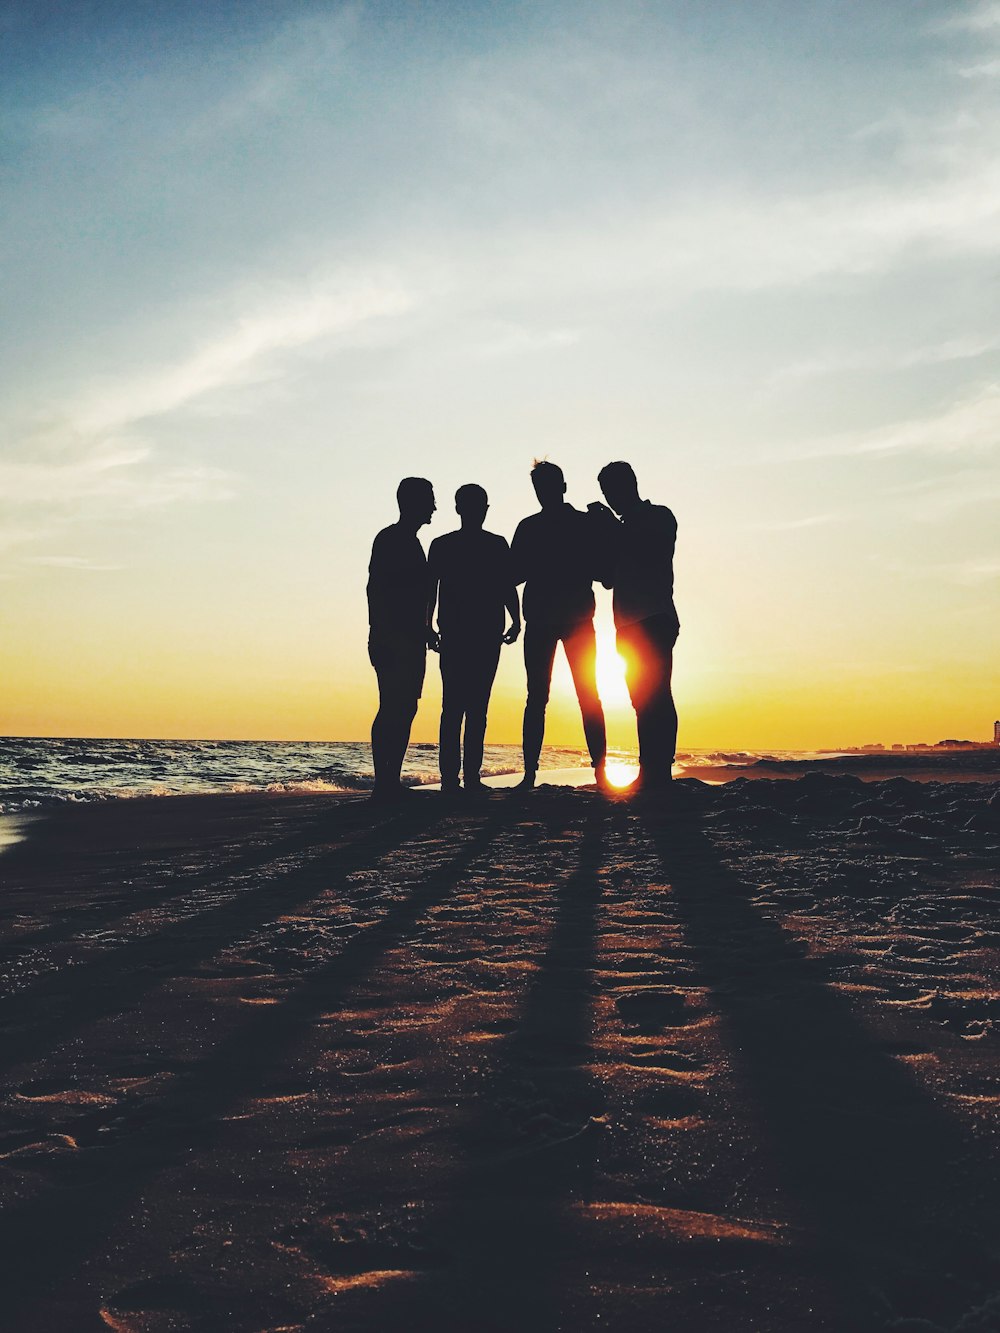 photographie de silhouette de quatre personnes debout sur le rivage